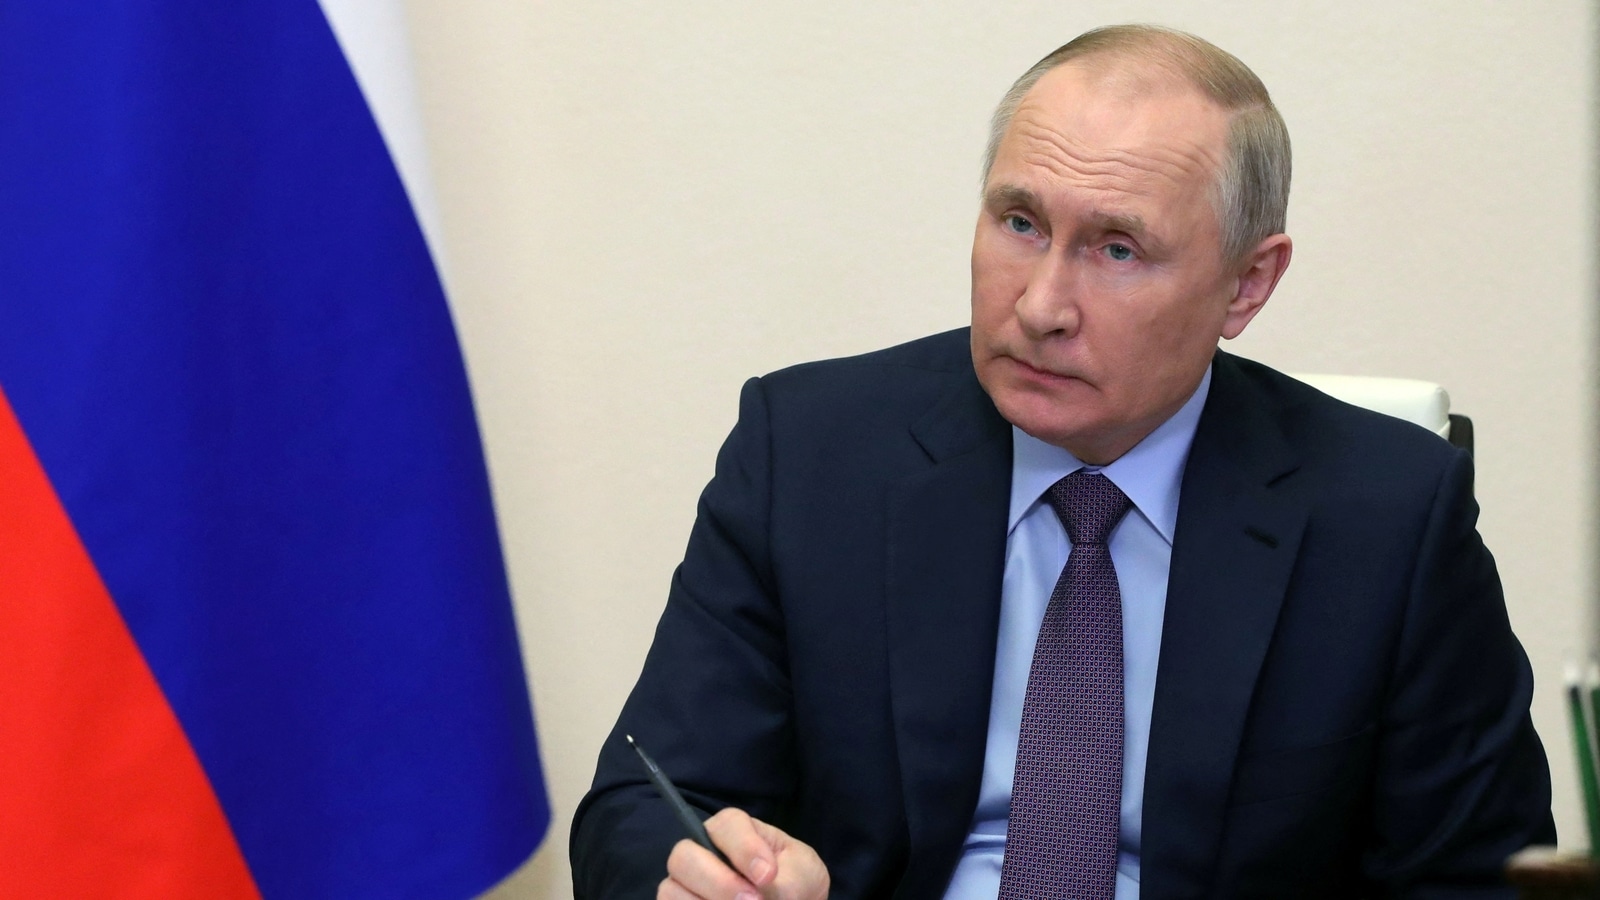 Putin se someterá a tratamiento contra el cáncer, cirugía, transferencia temporal de poder: Informe |  Noticias del mundo